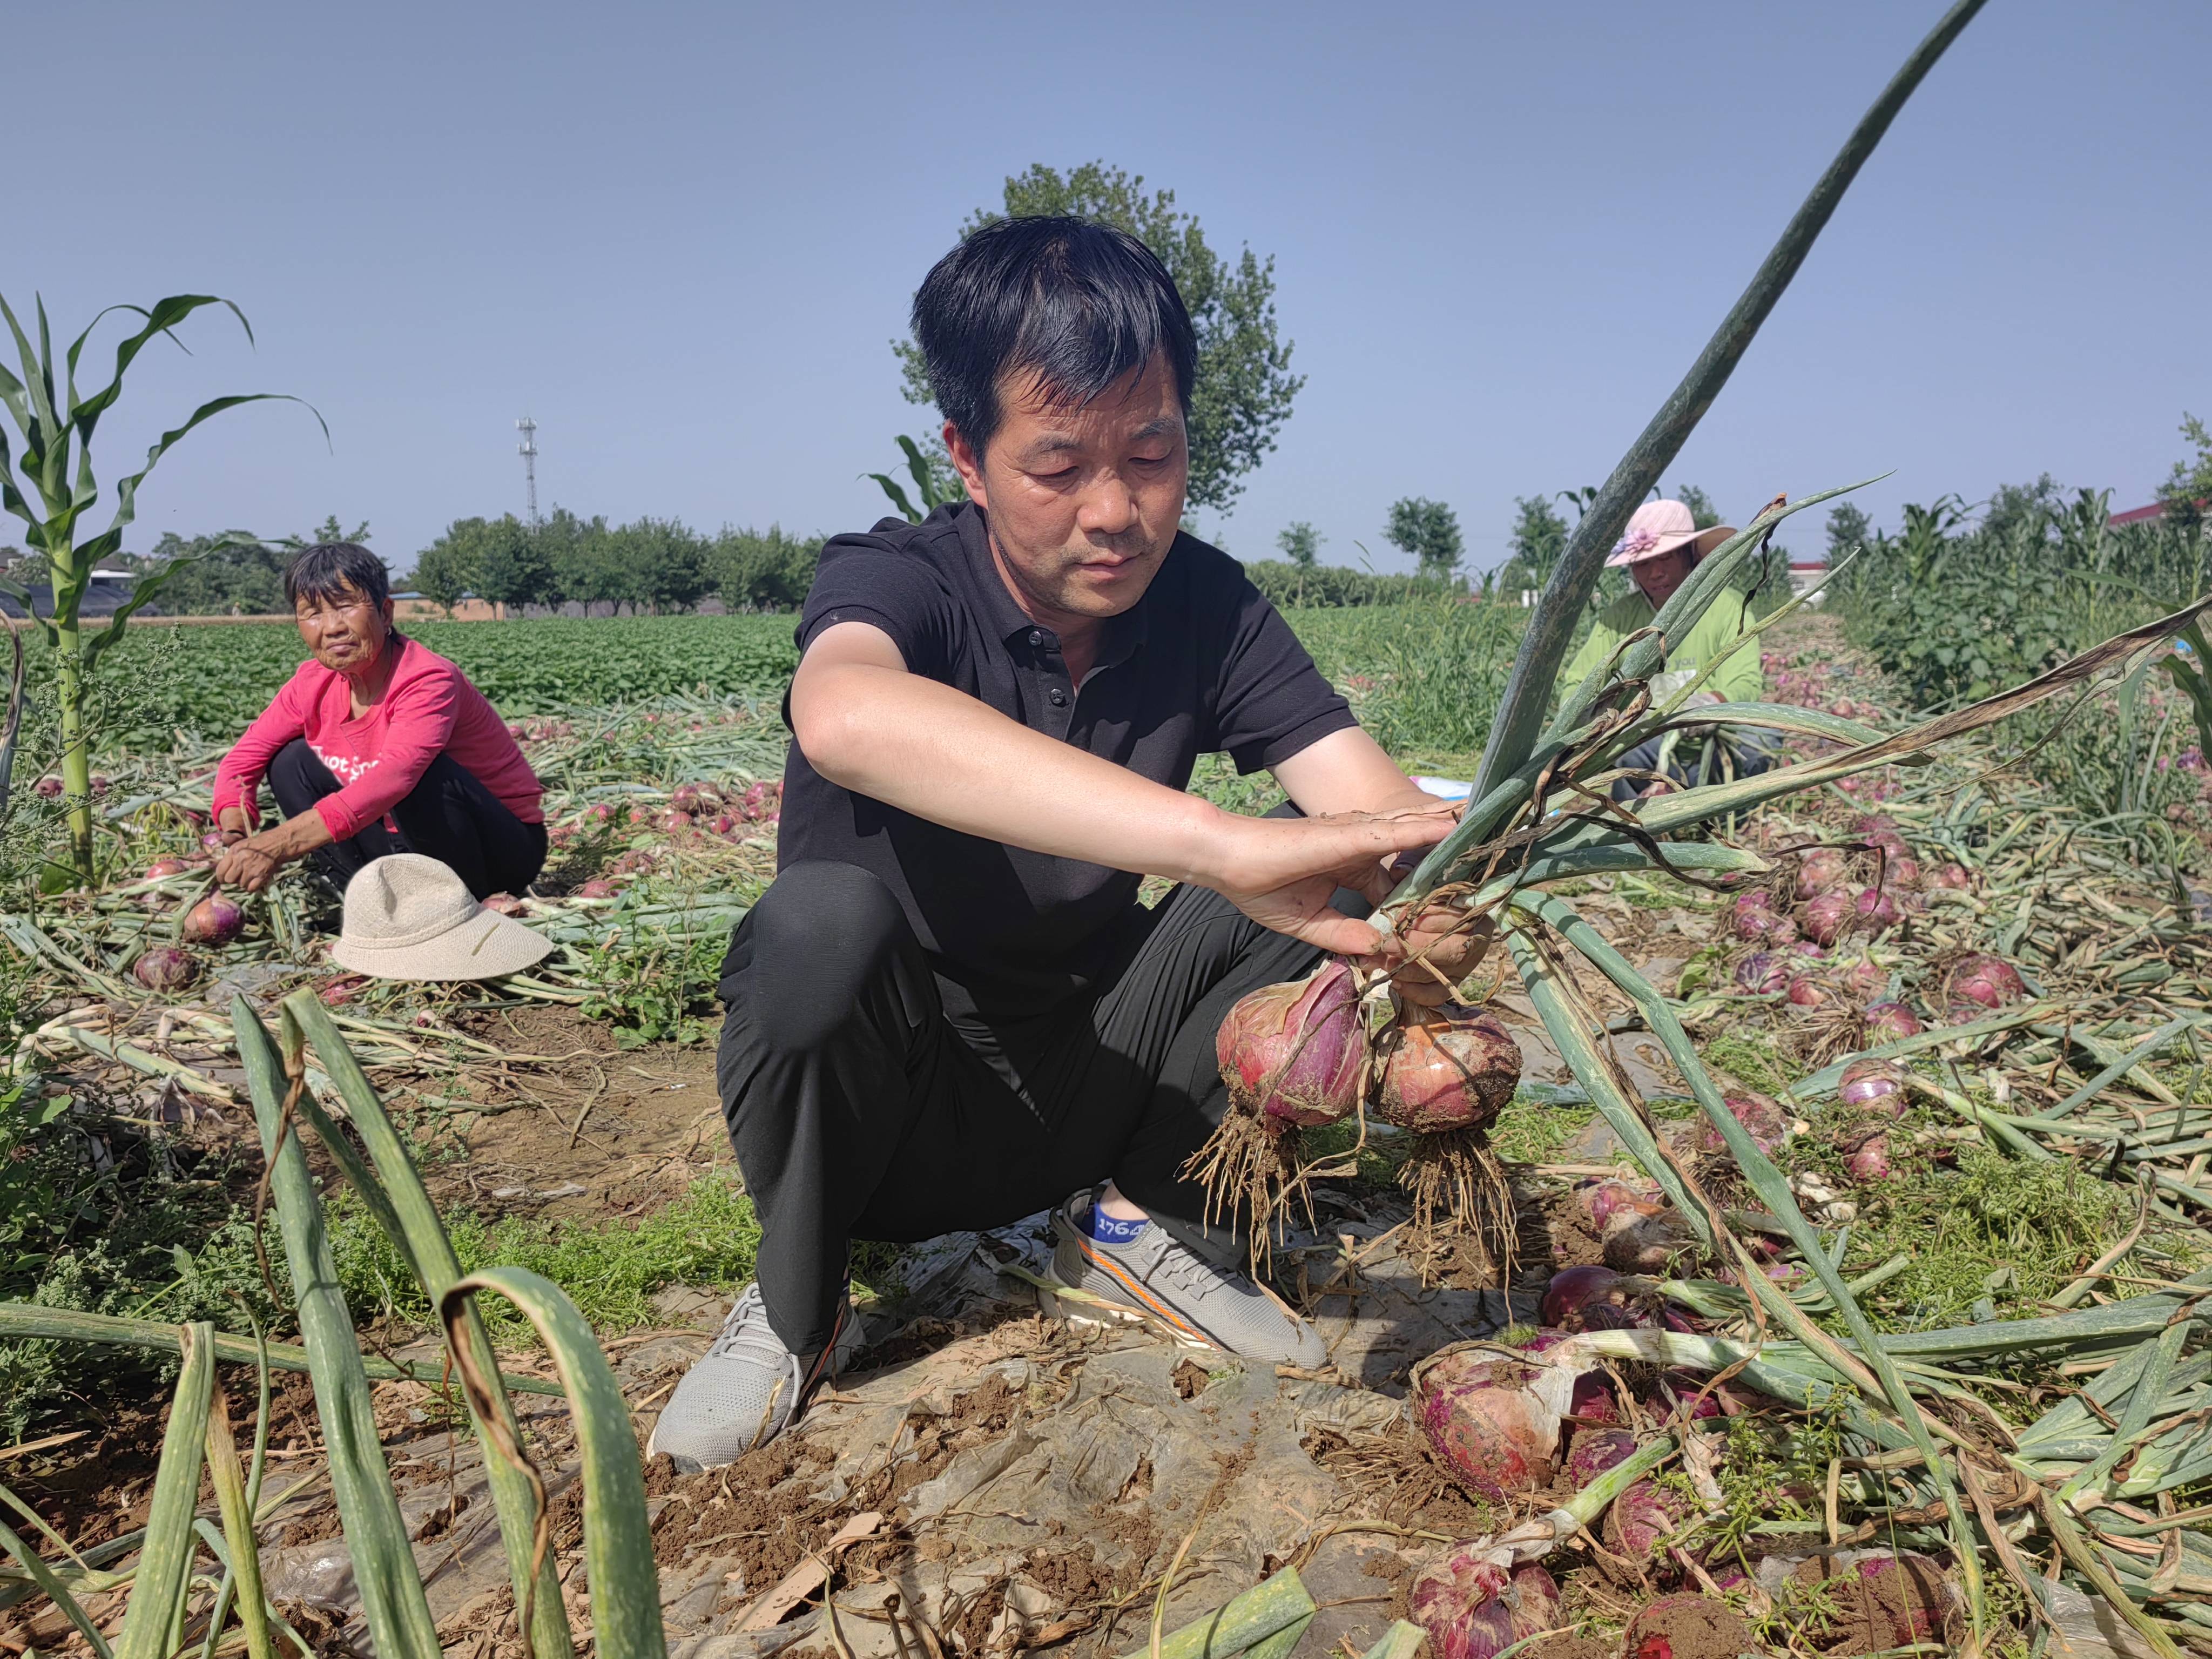 经过考察,去年11月从杨凌引进了秦红宝六号洋葱品种,套种在玉米地里